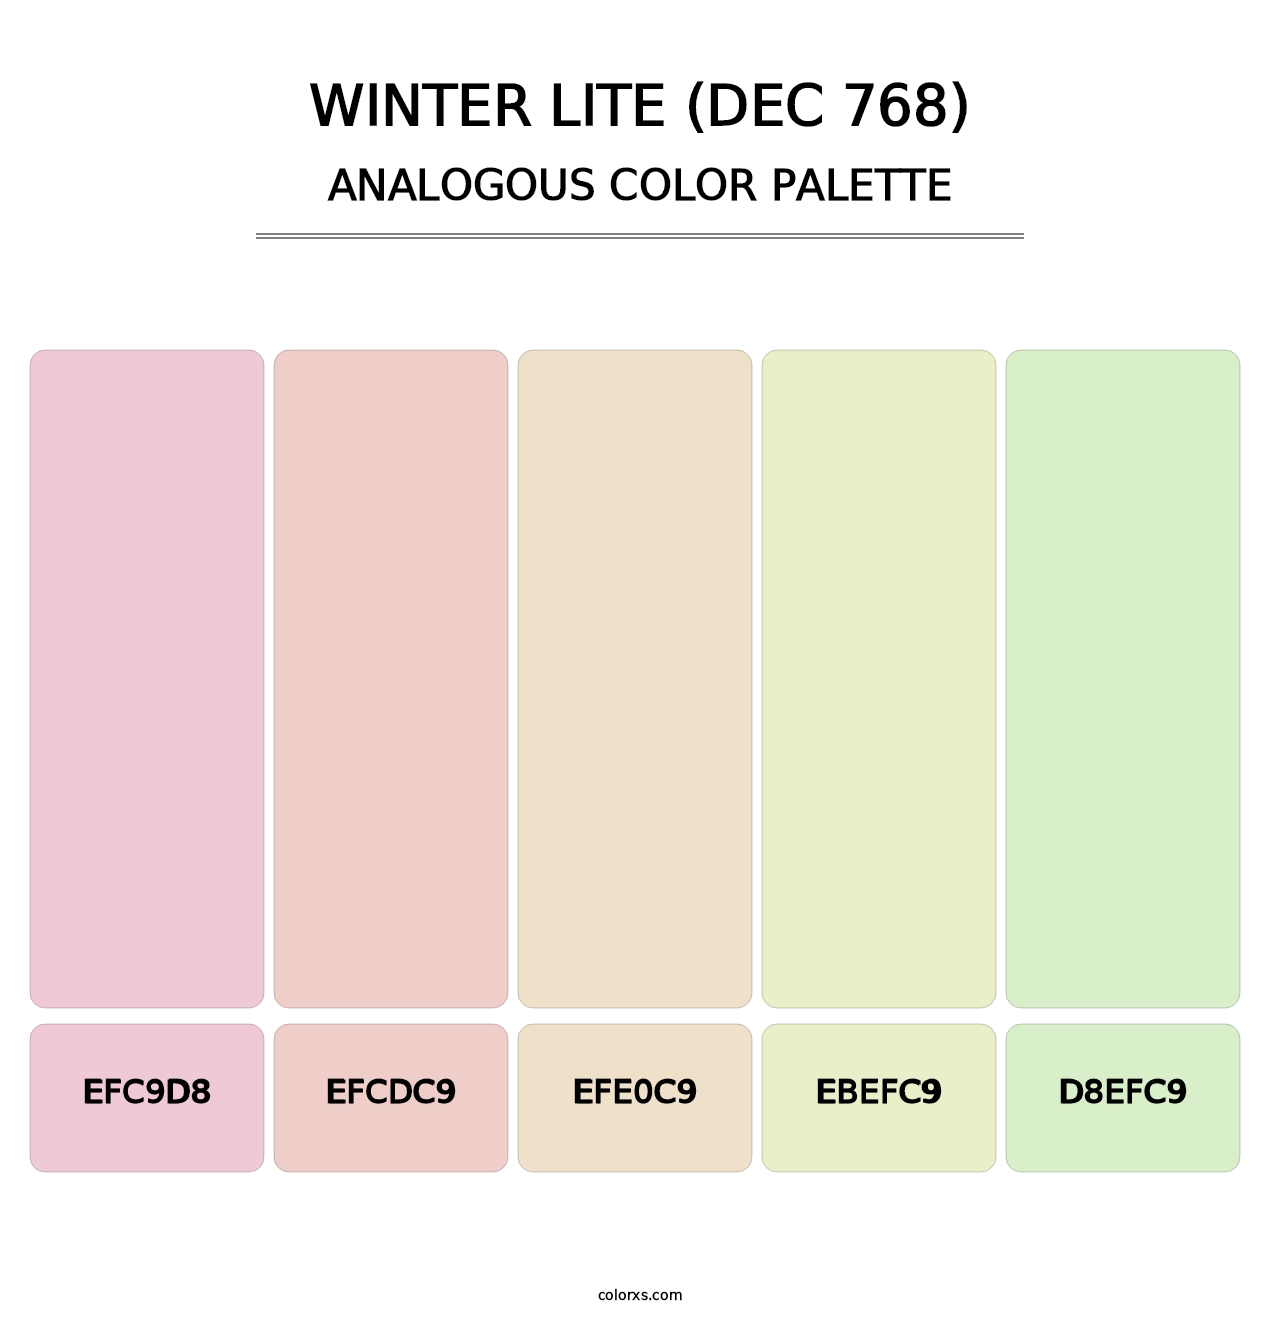 Winter Lite (DEC 768) - Analogous Color Palette